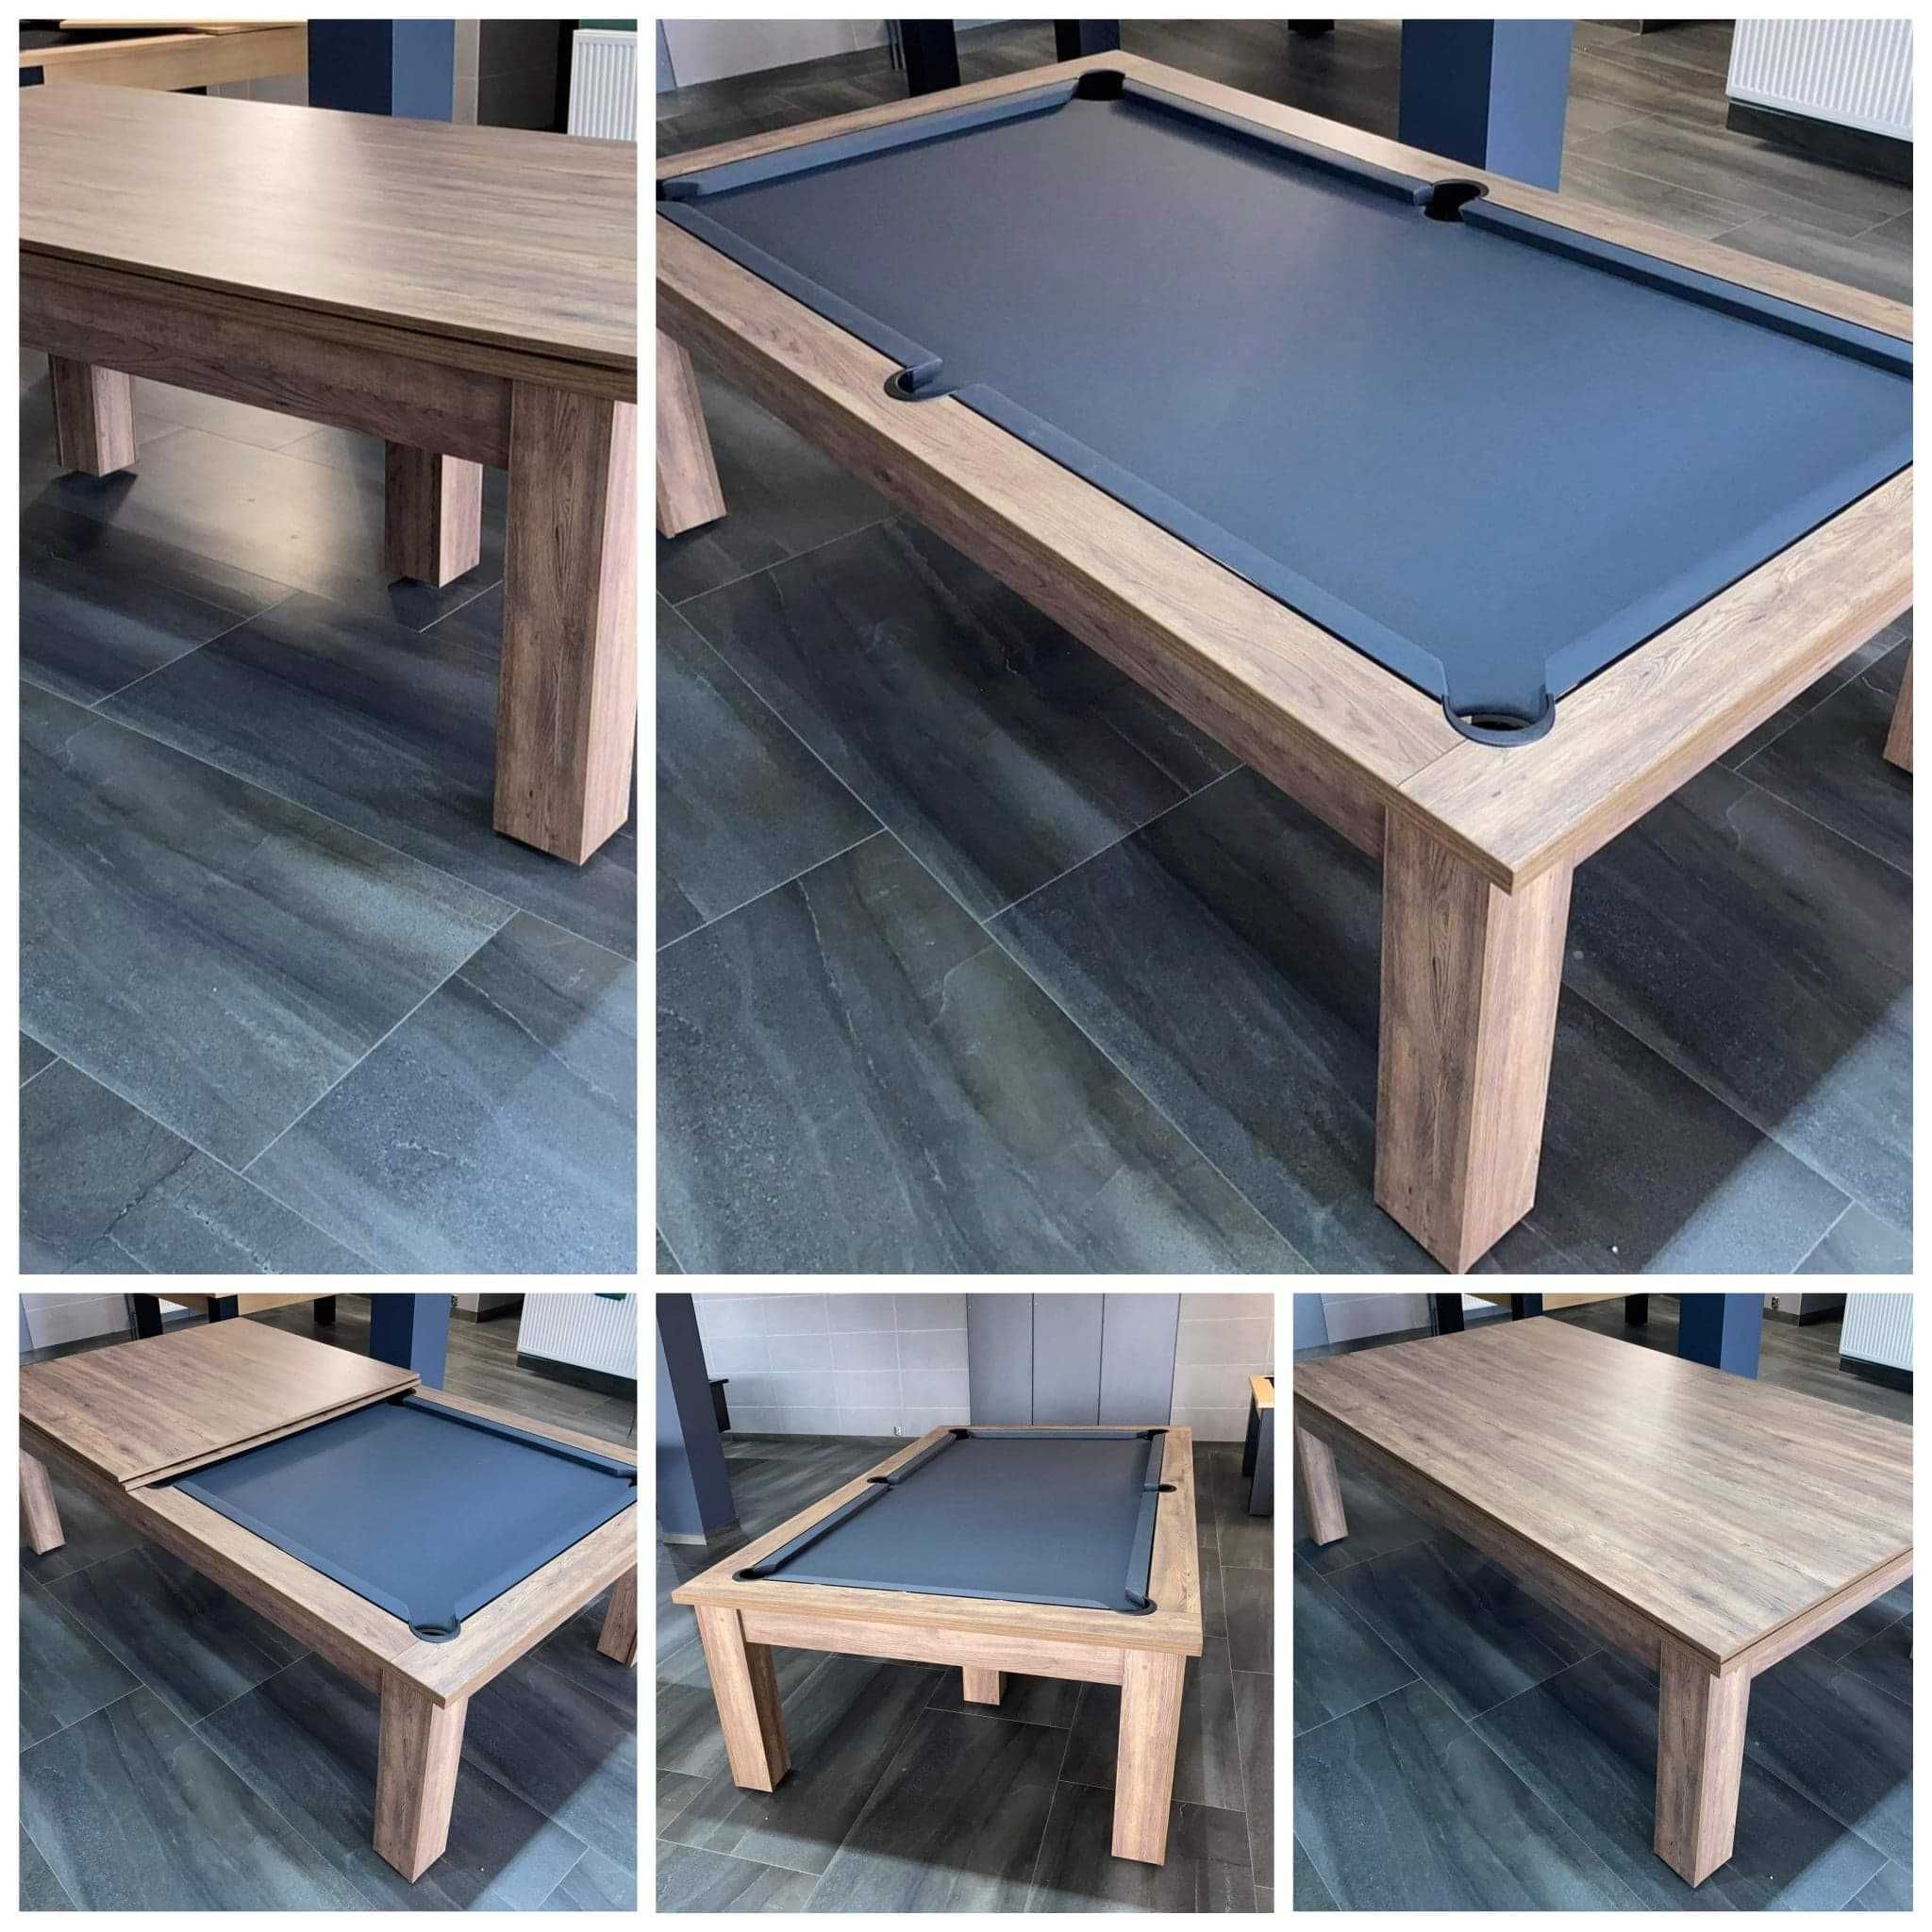 Stół bilardowy klasyk 6 ft z blatem nakrywającym /tenisem stołowym